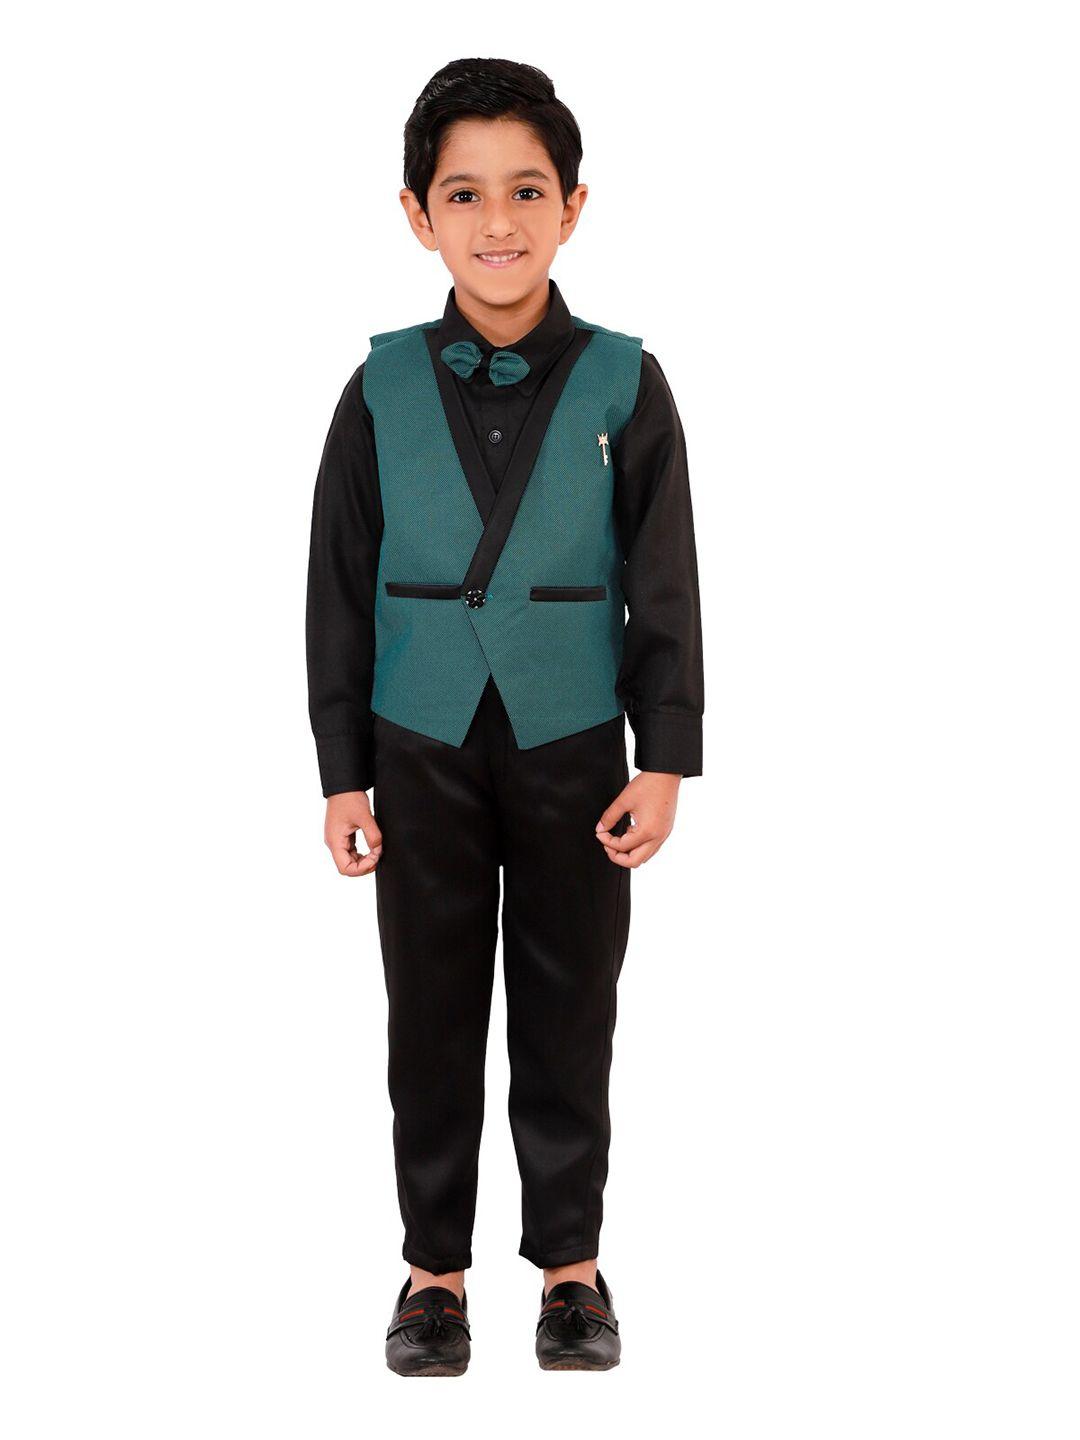 dkgf fashion boys green & black 3-piece suit